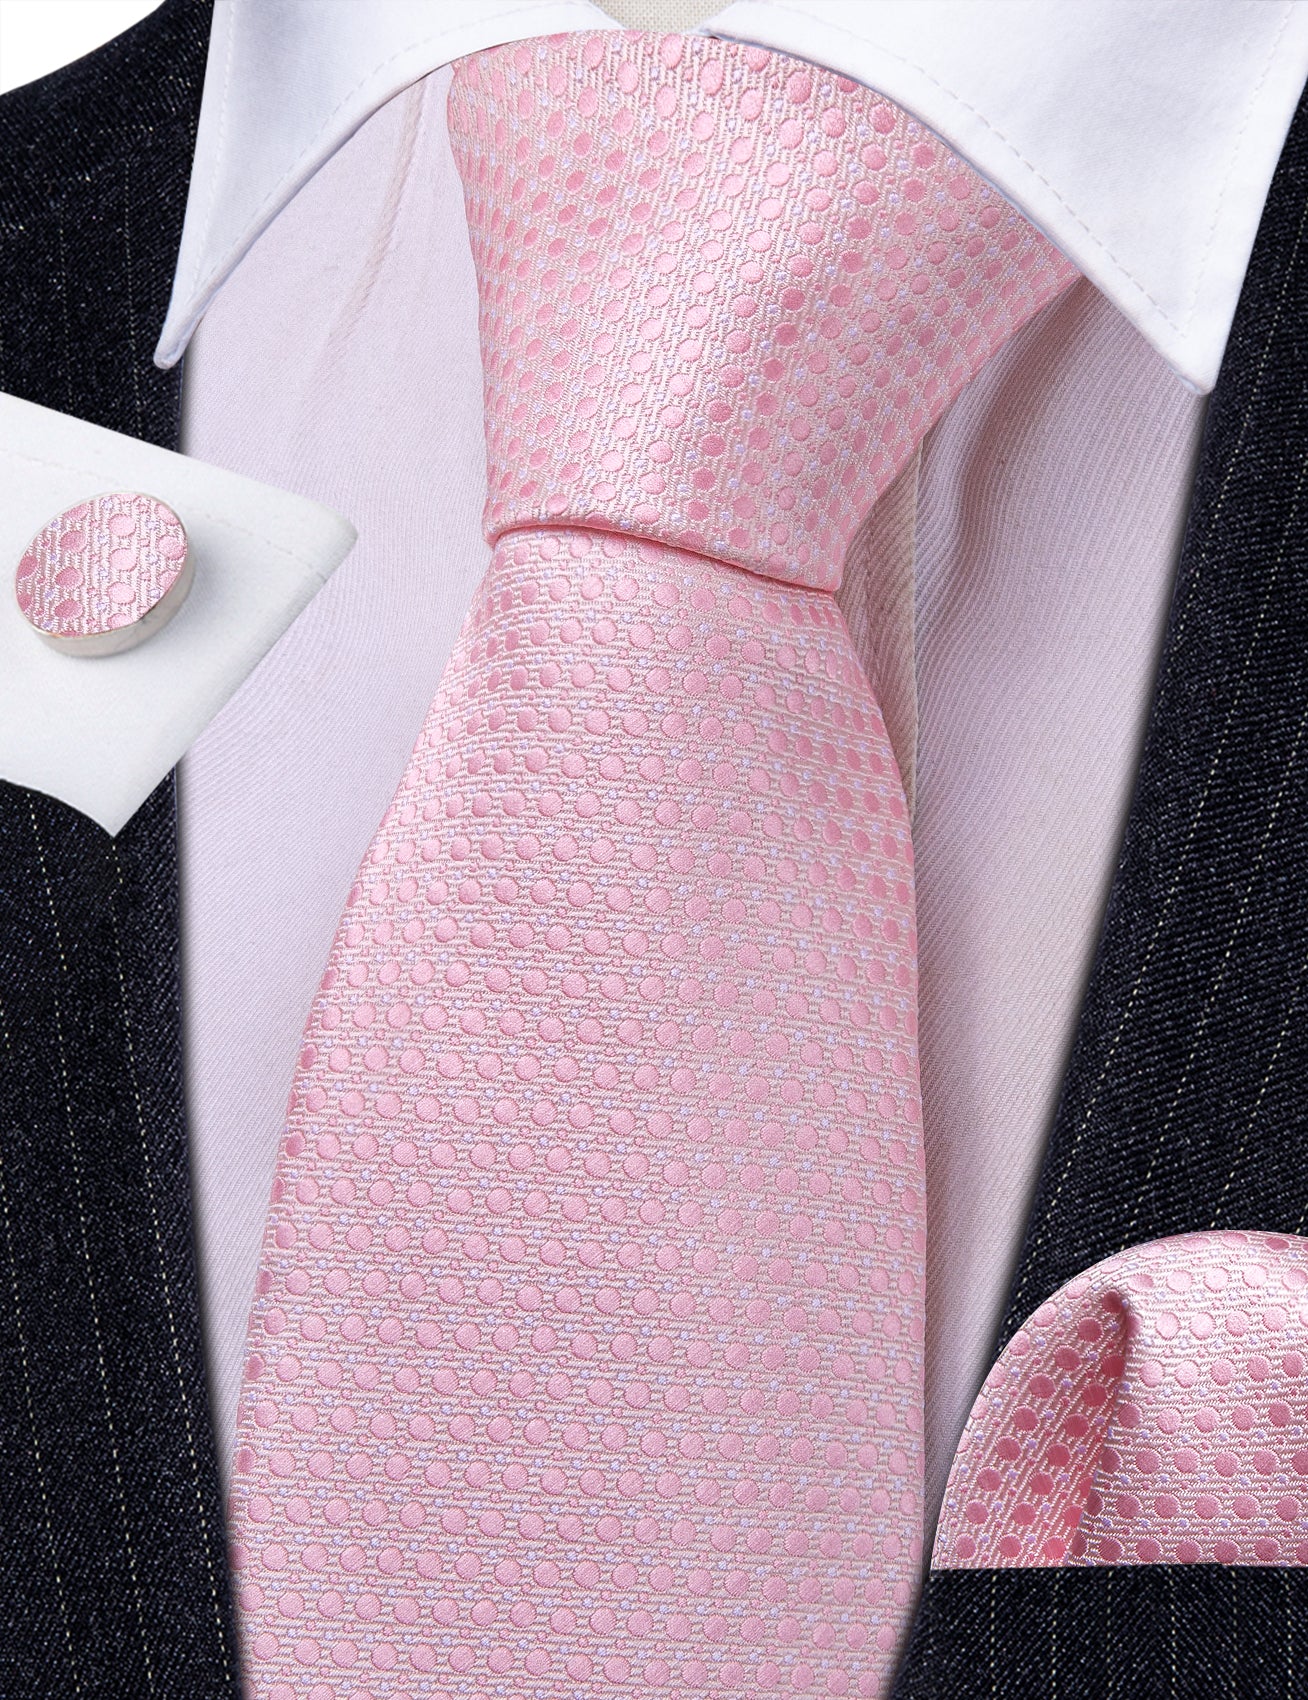 Pink Polka Dot Silk Necktie Pocket Square Cufflinks Set